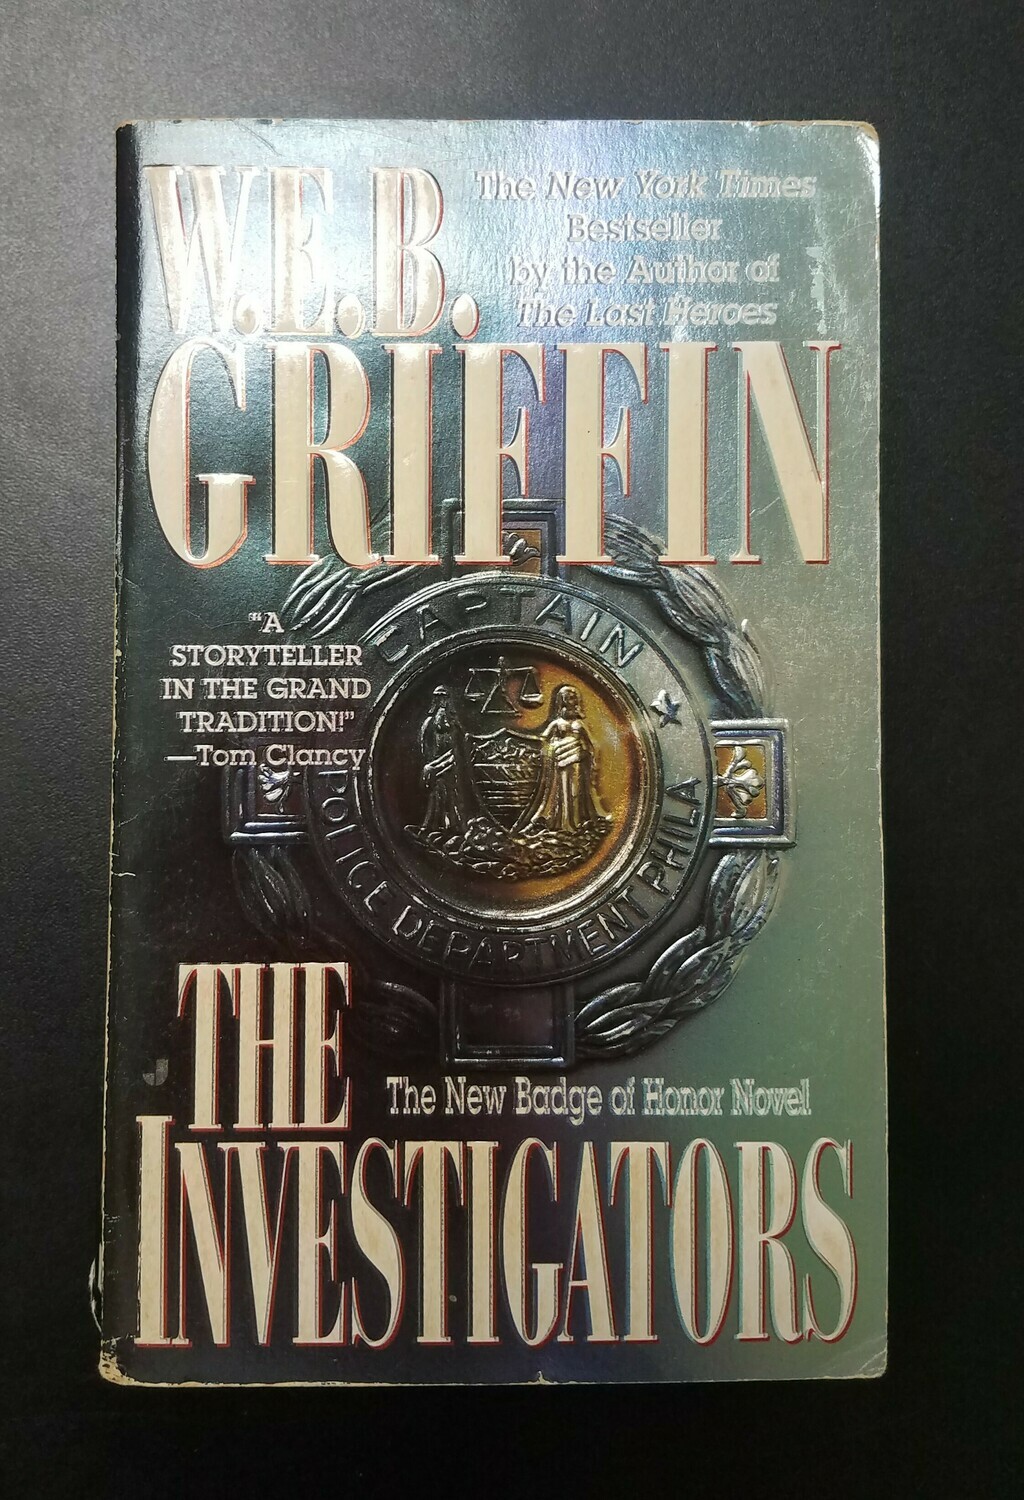 The Investigators by W.E.B. Griffin